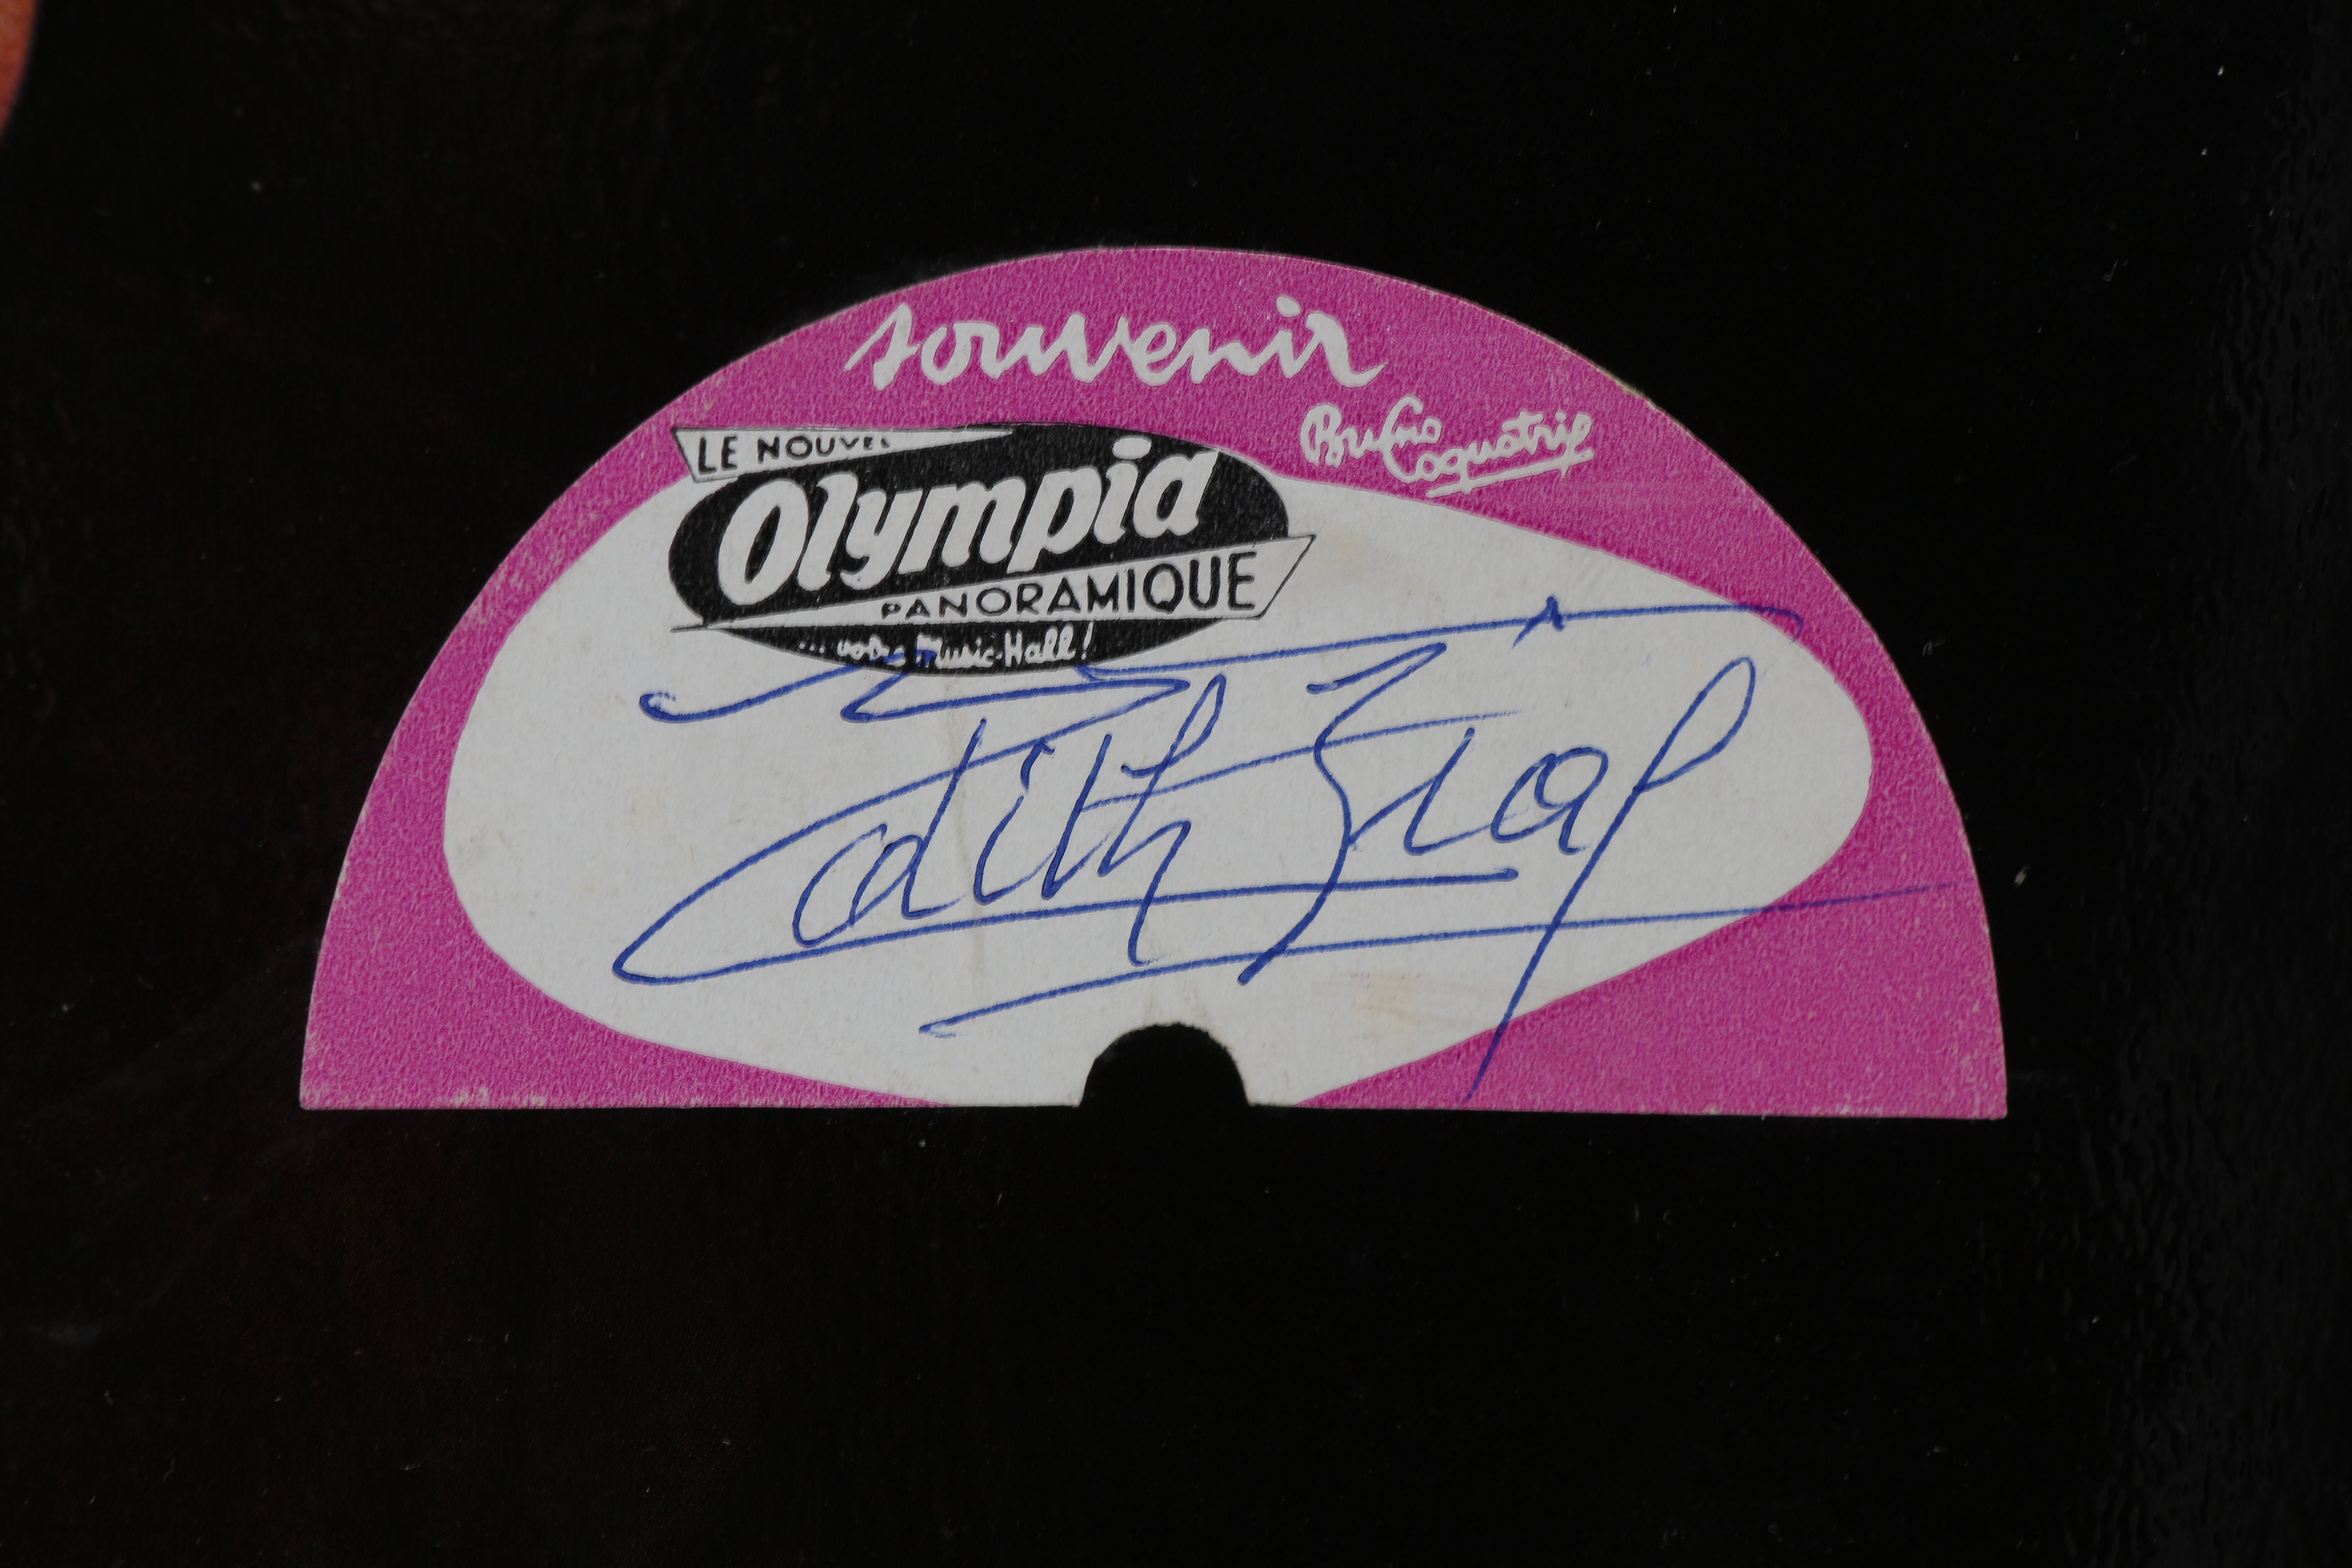 Edith PIAF - Signature autographe sur pochette disque 45 tours Milord -  TOUS NOS AUTOGRAPHES/MUSIQUE 